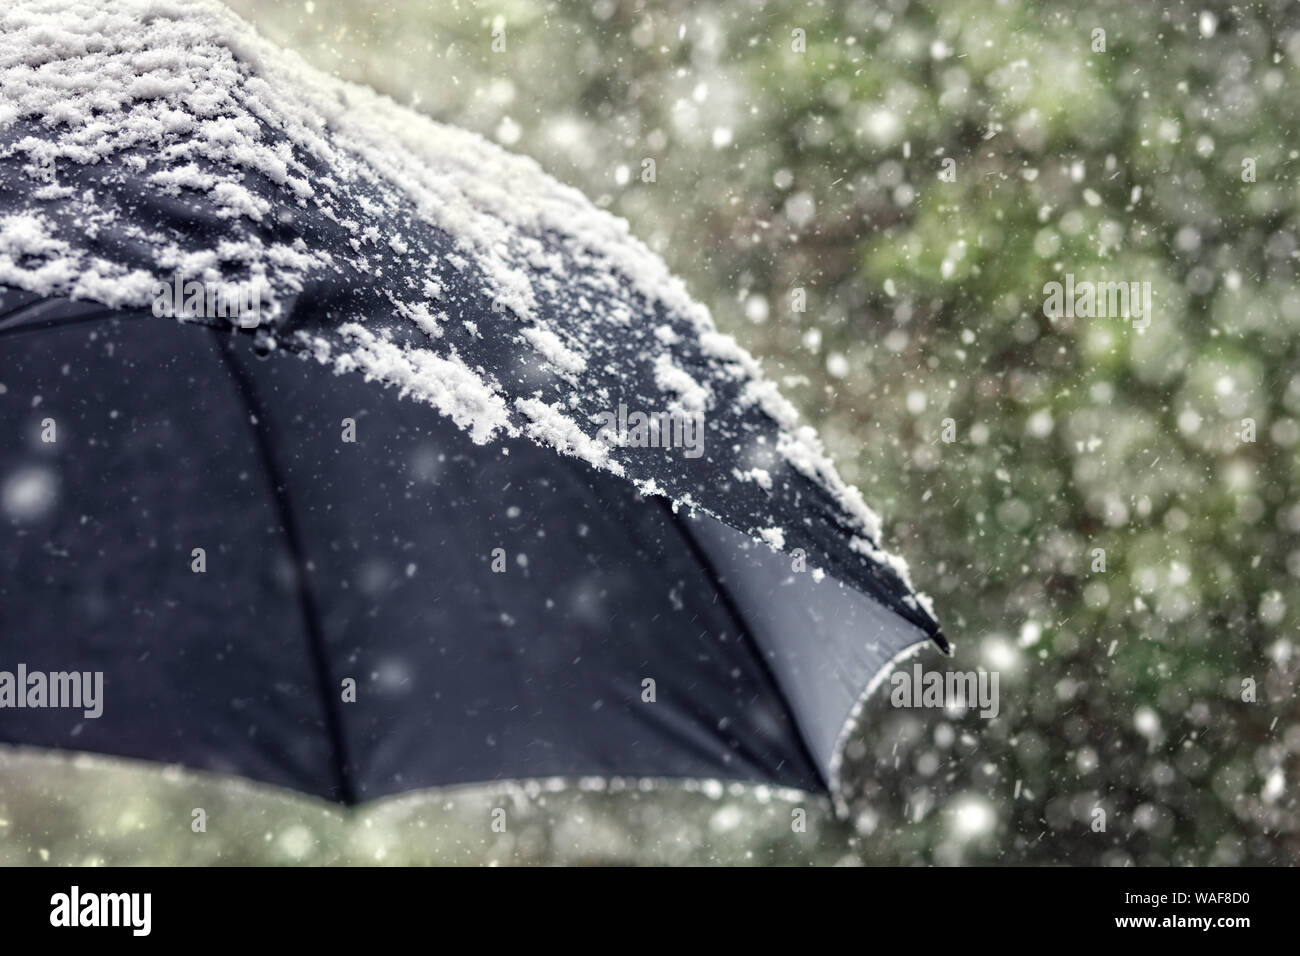 Schneeflocken fallen auf einen schwarzen Regenschirm Konzept für schlechtes Wetter, Winter oder schneit Blizzard Stockfoto